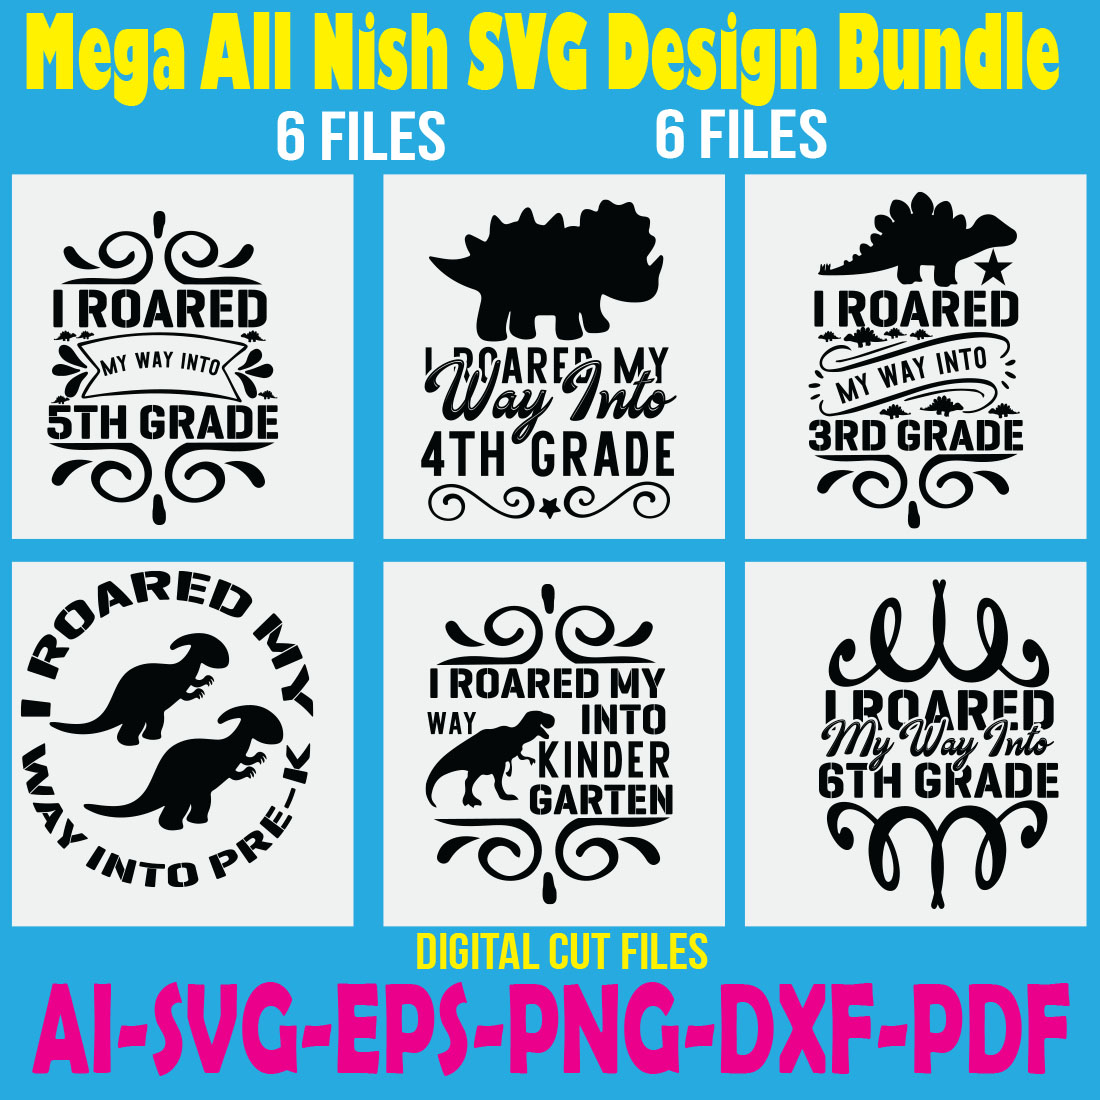 Mega All Nish SVG Design Bundle cover image.